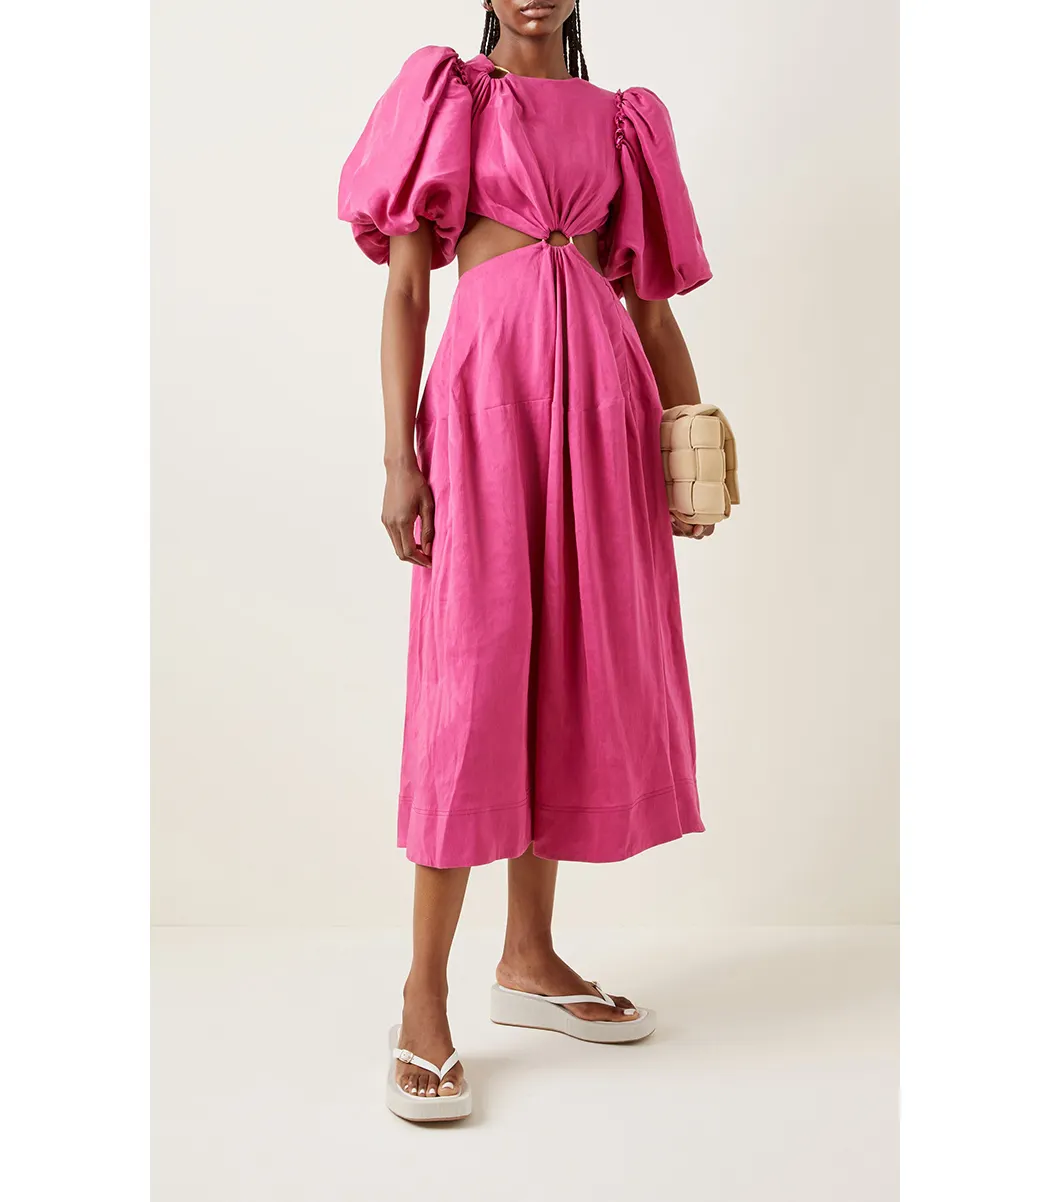 Bettergirl Customize Linen Blend 2022 Summer New Twist Cut Out Casual Loose O Neck Dress Pink Linen Maxi Long Womens Dresses